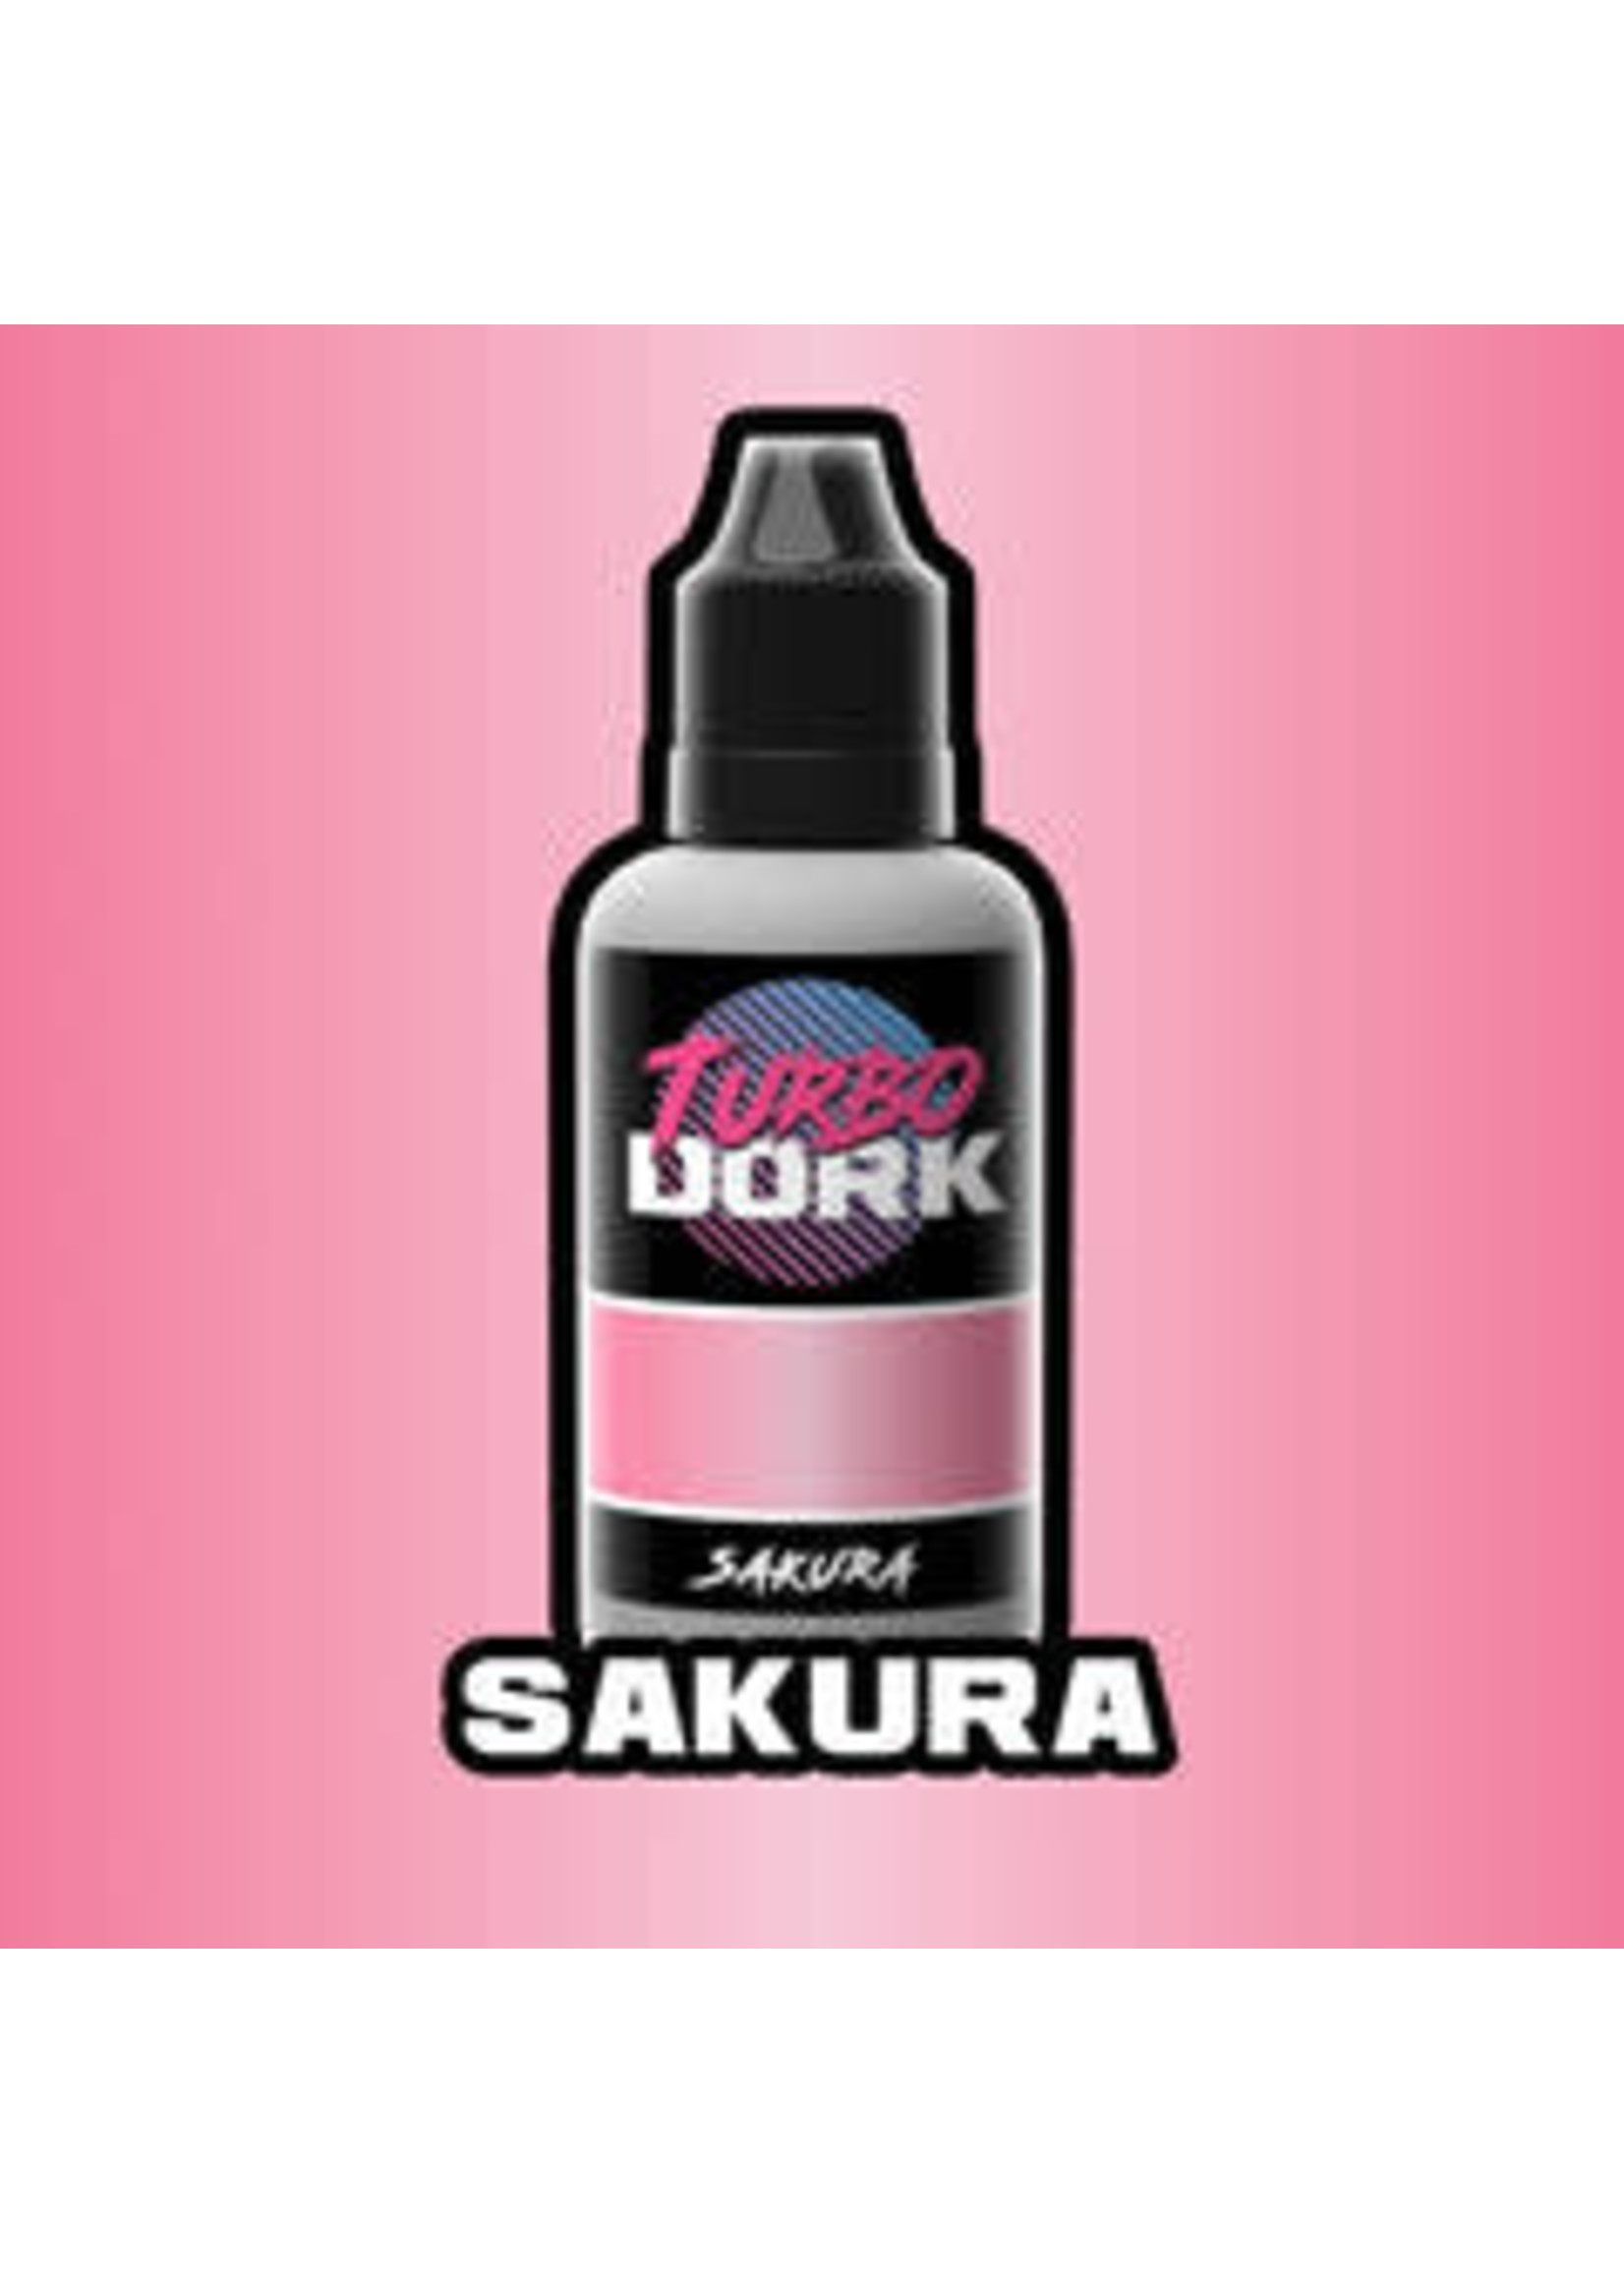 Turbo Dork Turbo Dork: Sakura